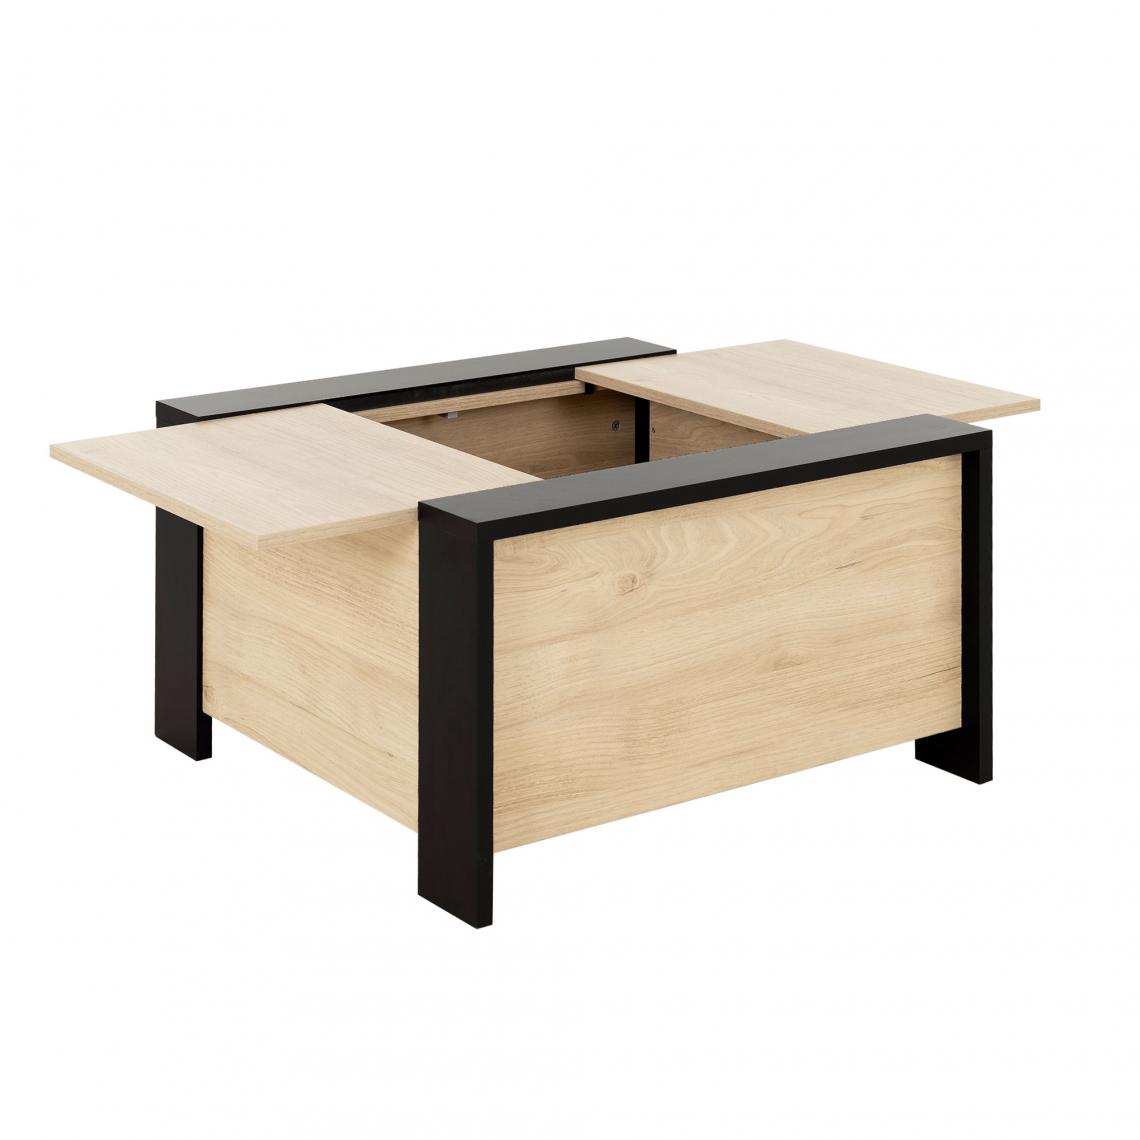 Gami - Table basse avec coffre 78x78x44 cm décor chêne et noir - Tables basses